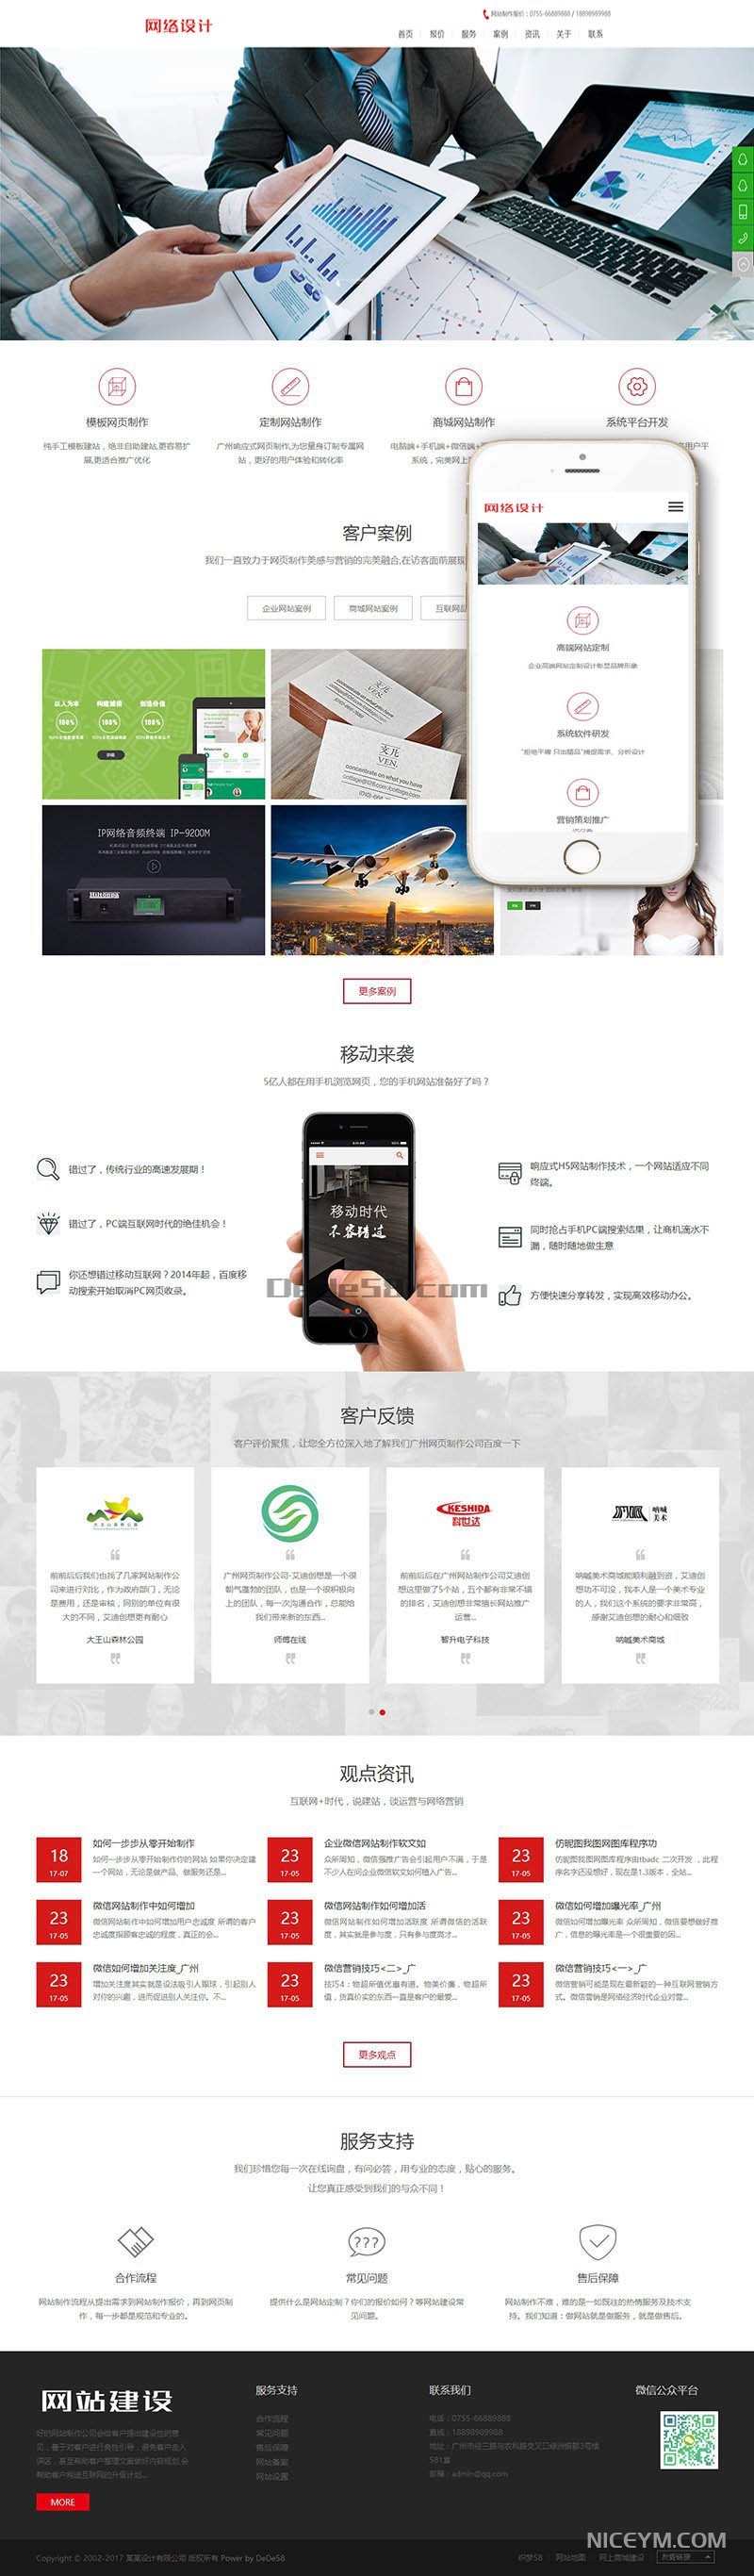 响应式网站网络设计公司织梦模板(自适应手机端)